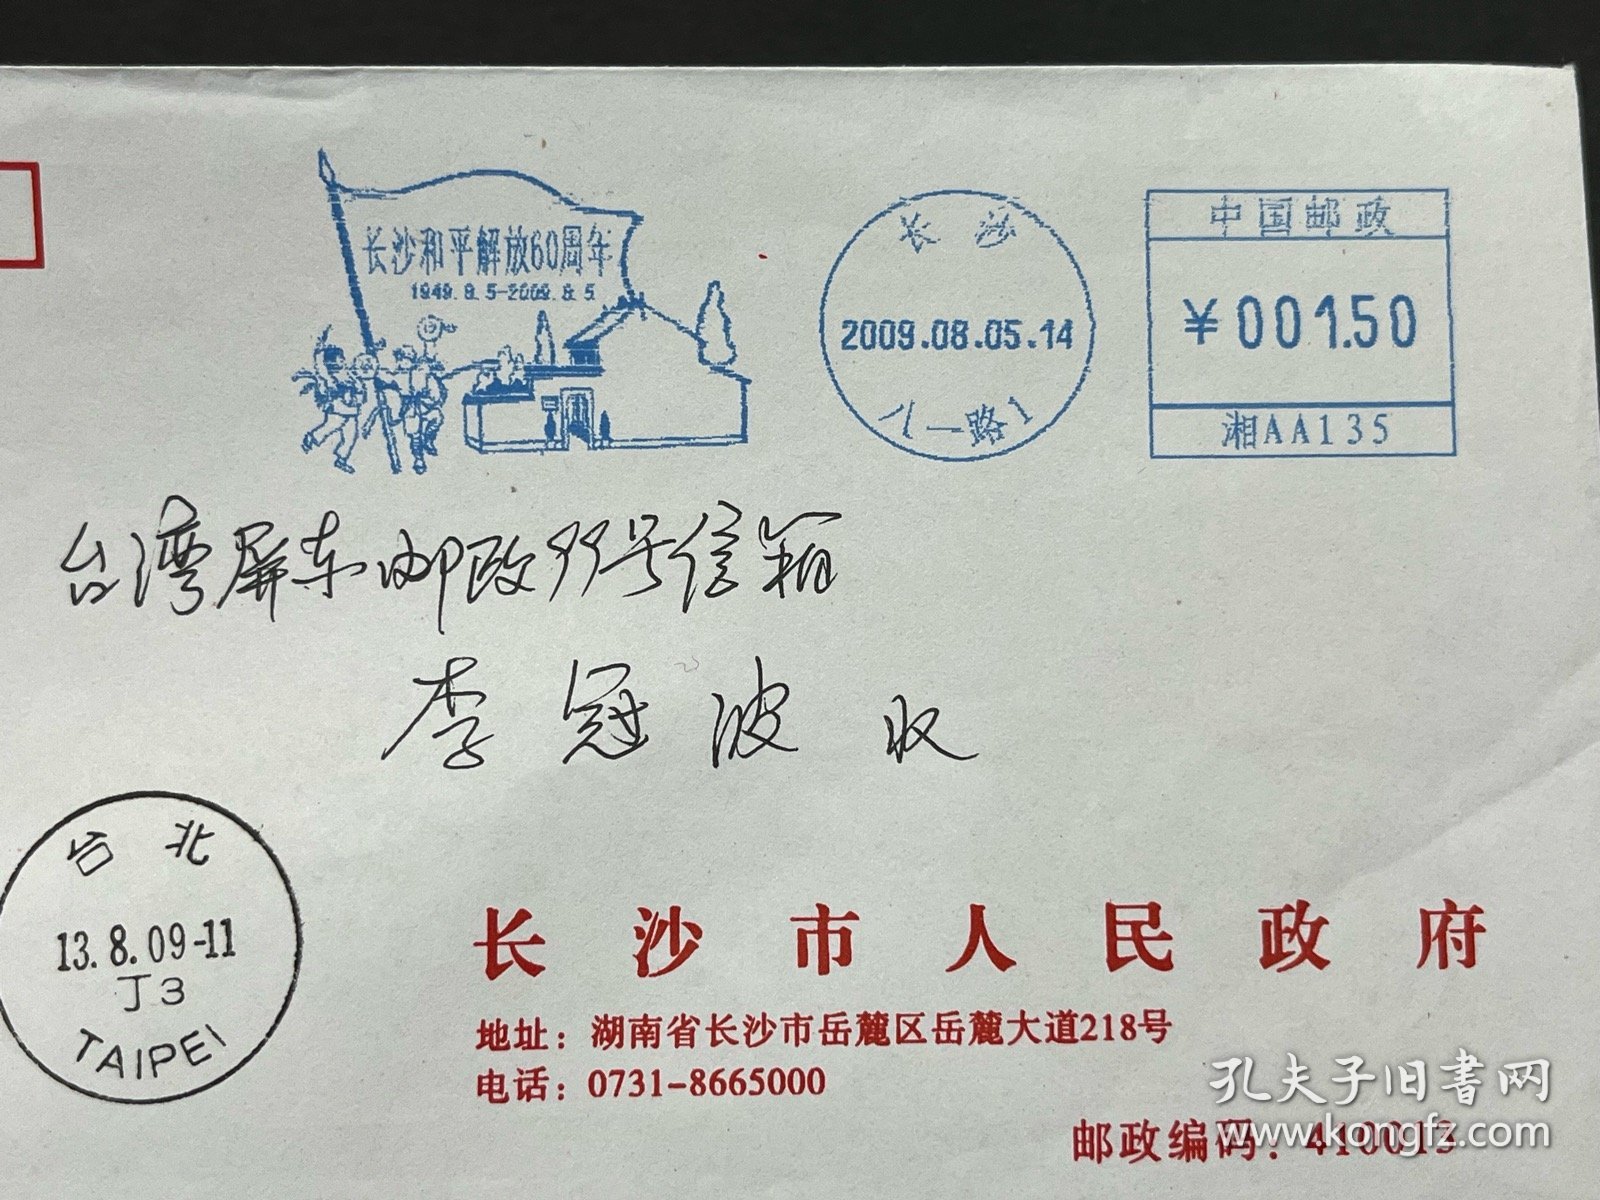 “长沙和平解放60周年”湘邮机戳寄台湾公函实寄封